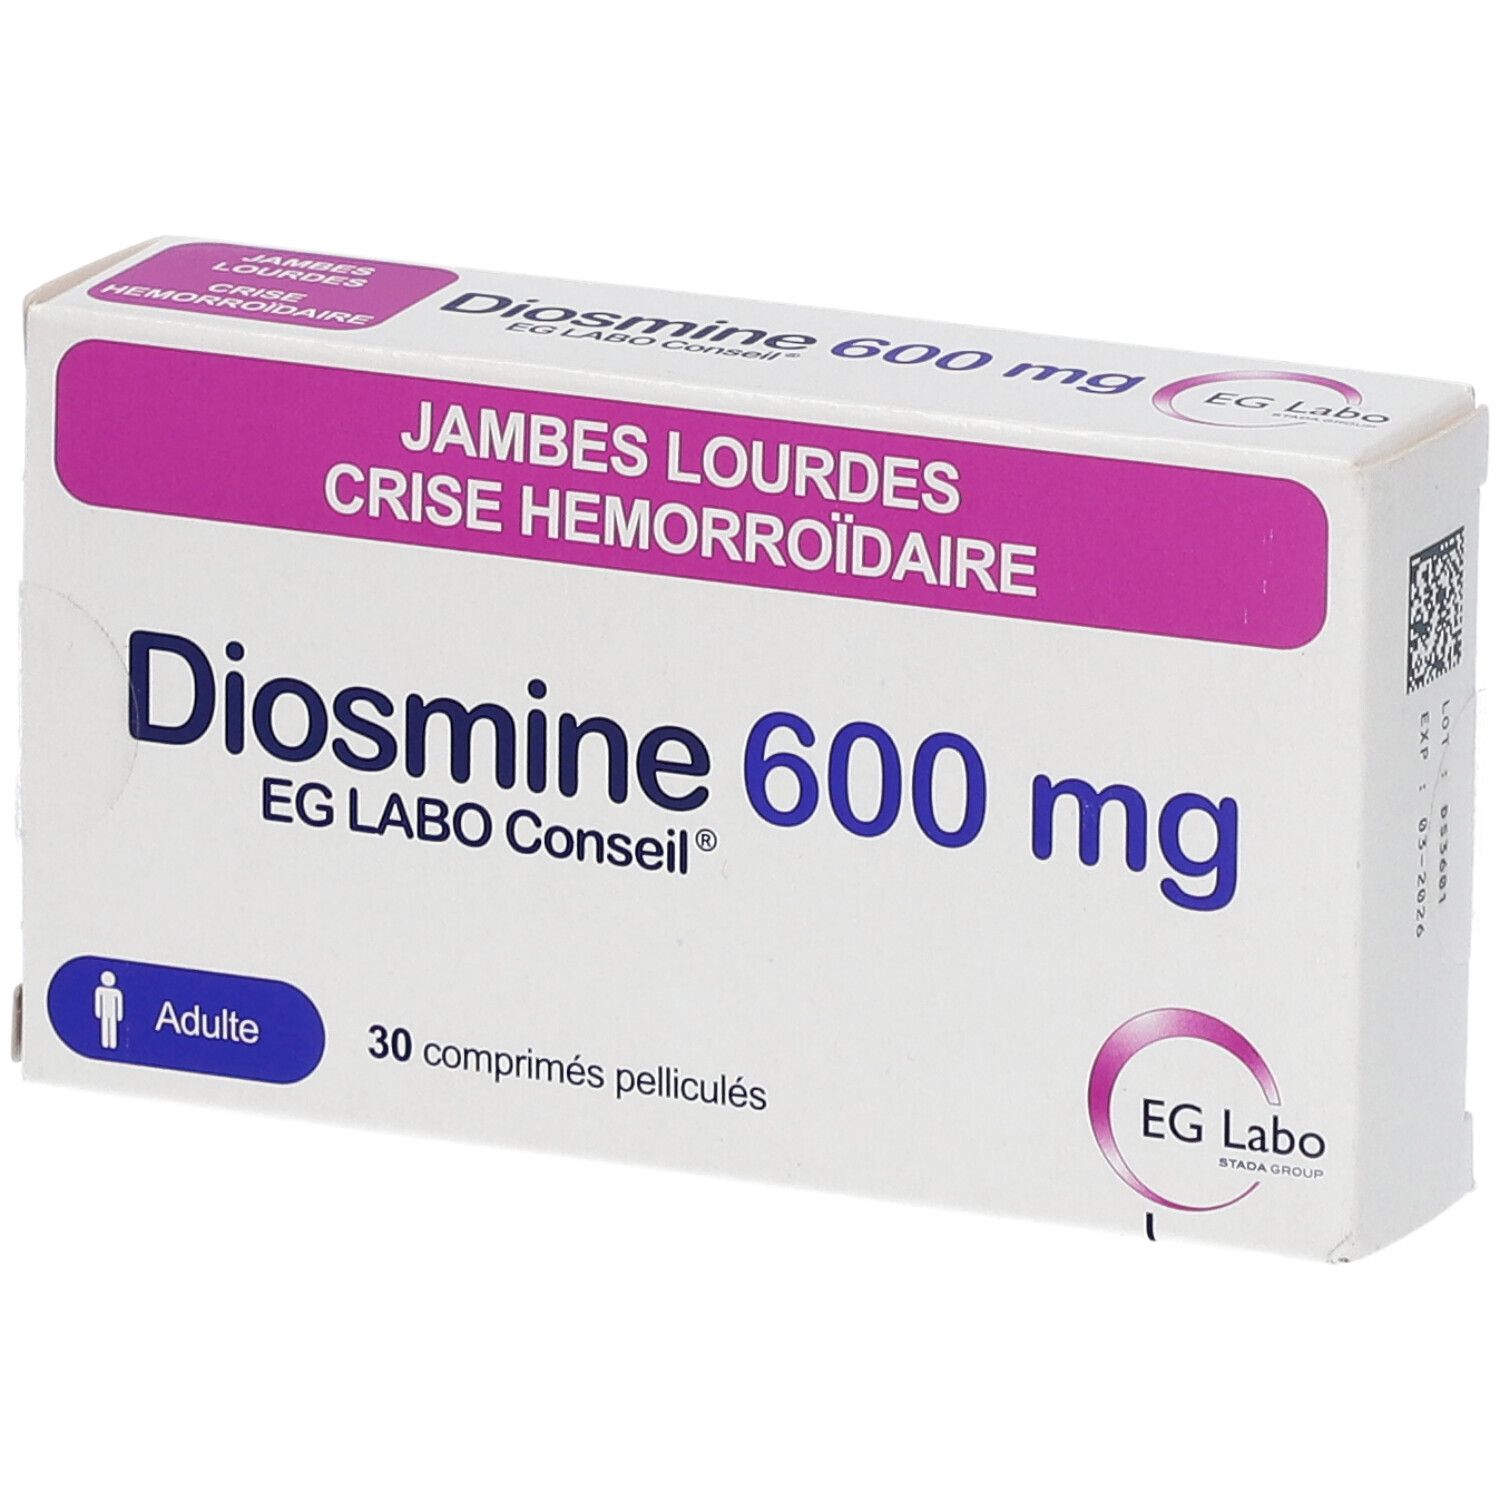 Diosmine EG Labo Conseil® 600 mg